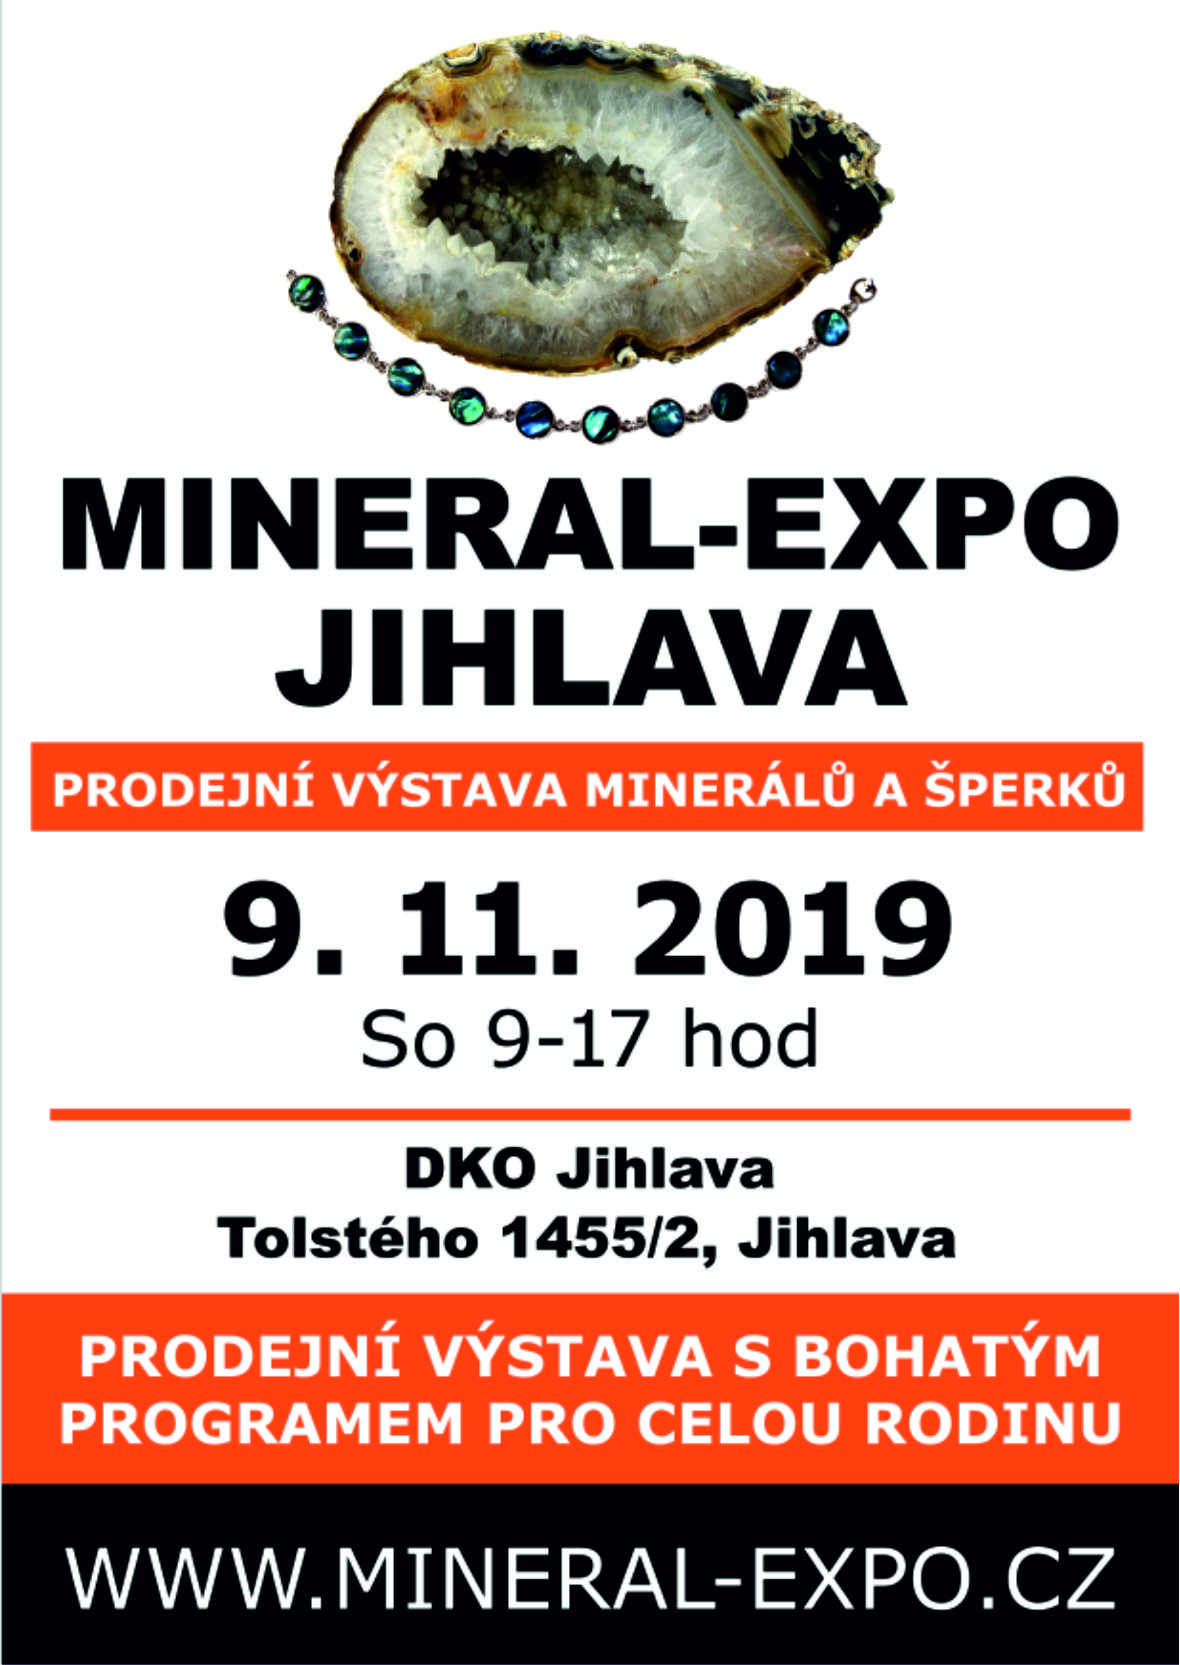 MINERAL–EXPO JIHLAVA